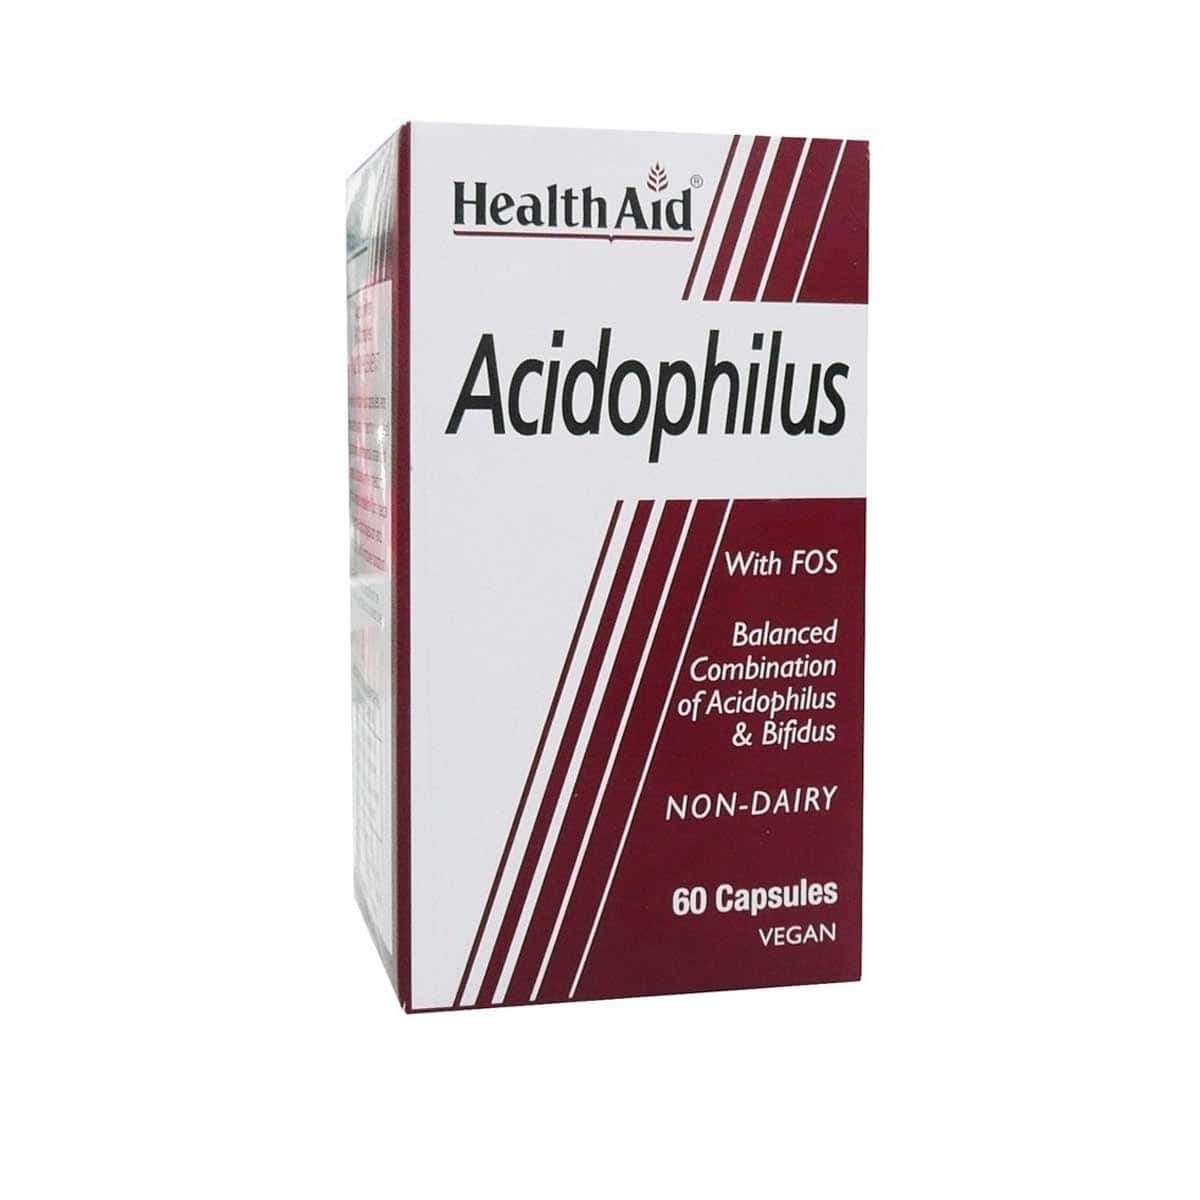 Health-Aid-Acidophilus-60-kapsoules-5019781015634